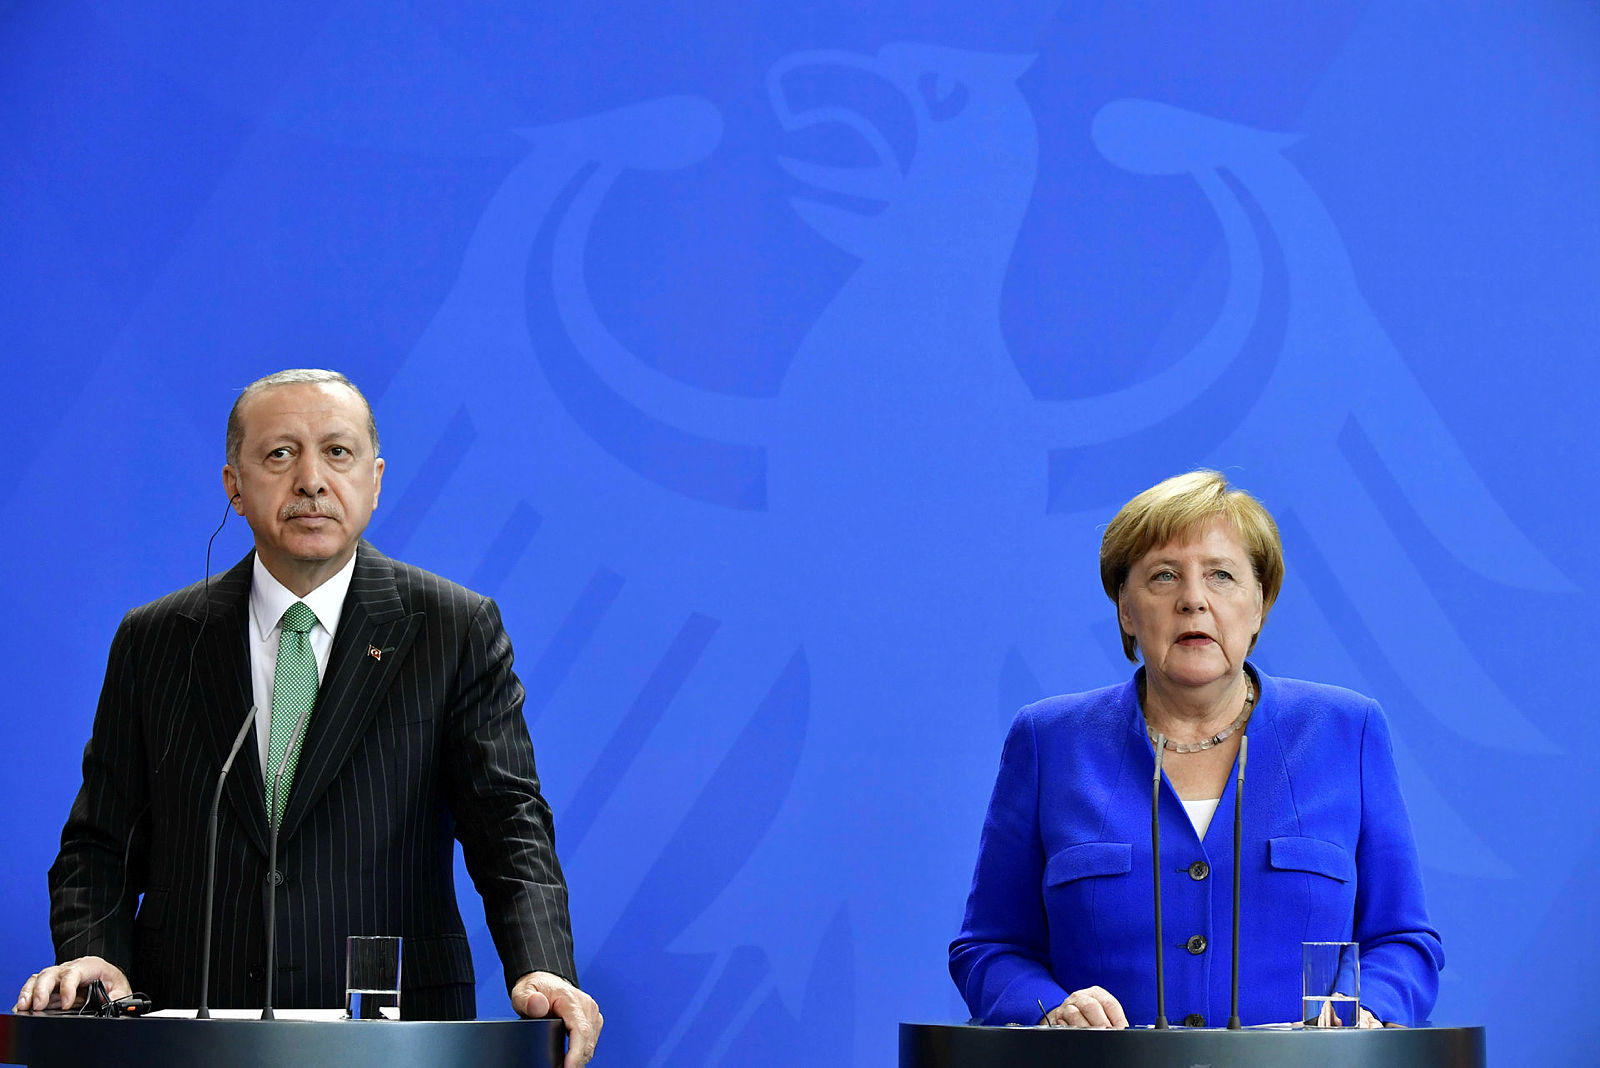 Başkan Erdoğan Merkel’in suratına açık açık söyledi: “Ne ben ne de siz…”